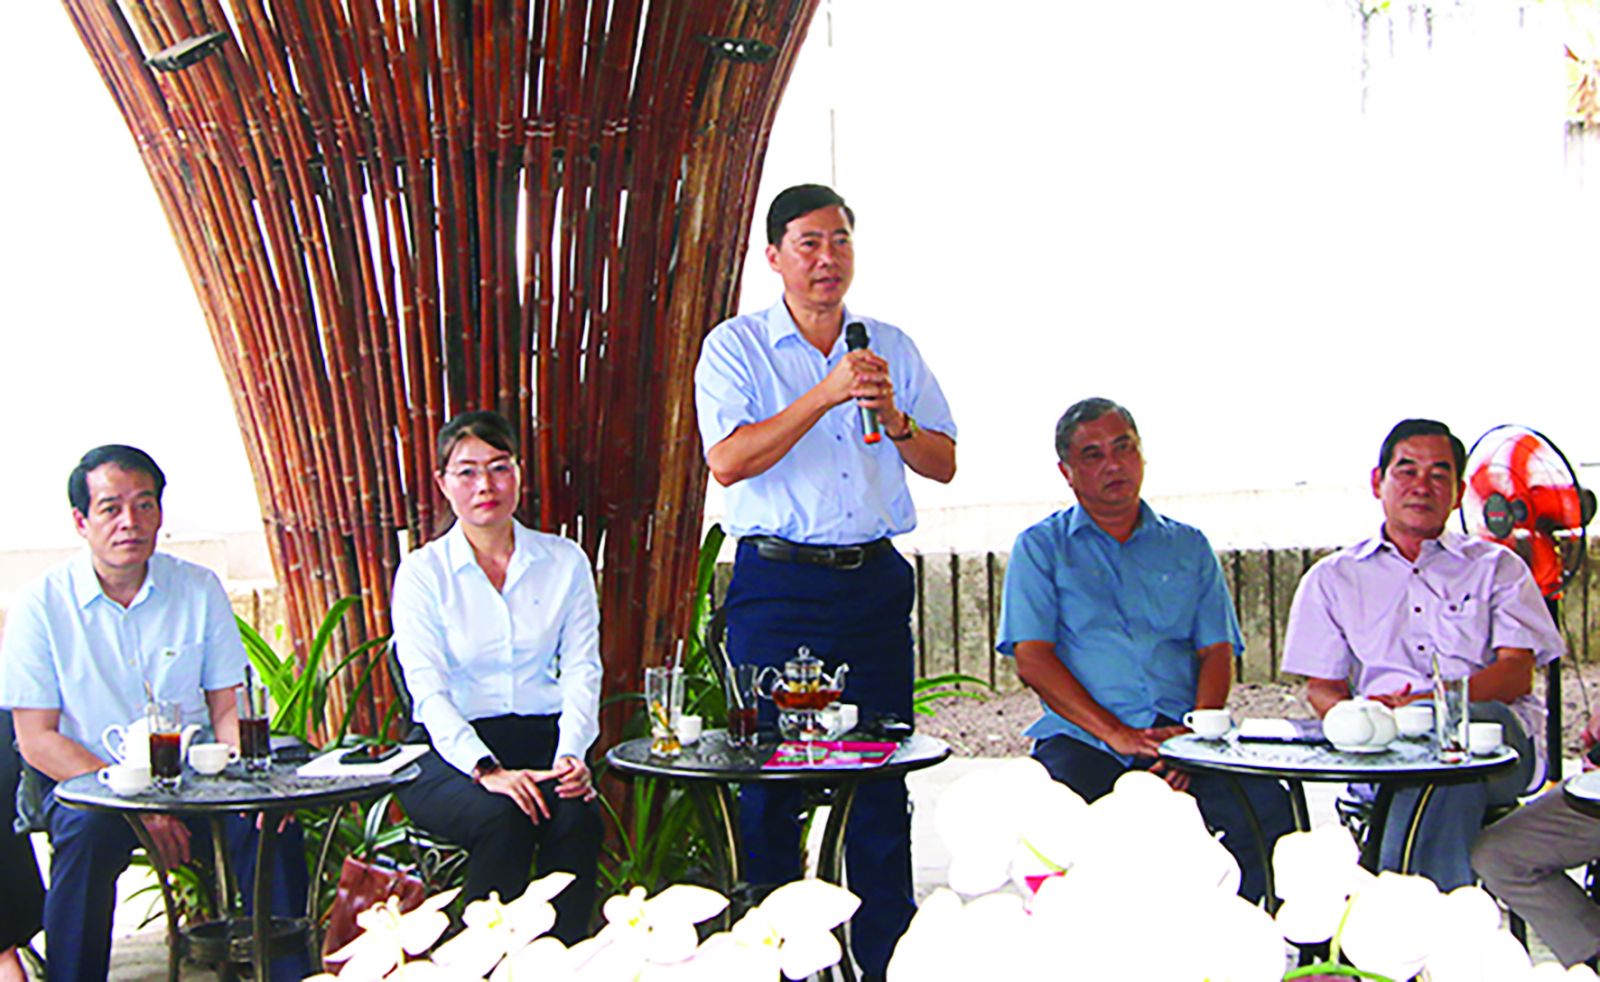  Chủ tịch UBND tỉnh Đồng Tháp Phạm Thiện Nghĩa tham dự buổi cà phê doanh nghiệp tại Khu công nghiệp Sa Đéc